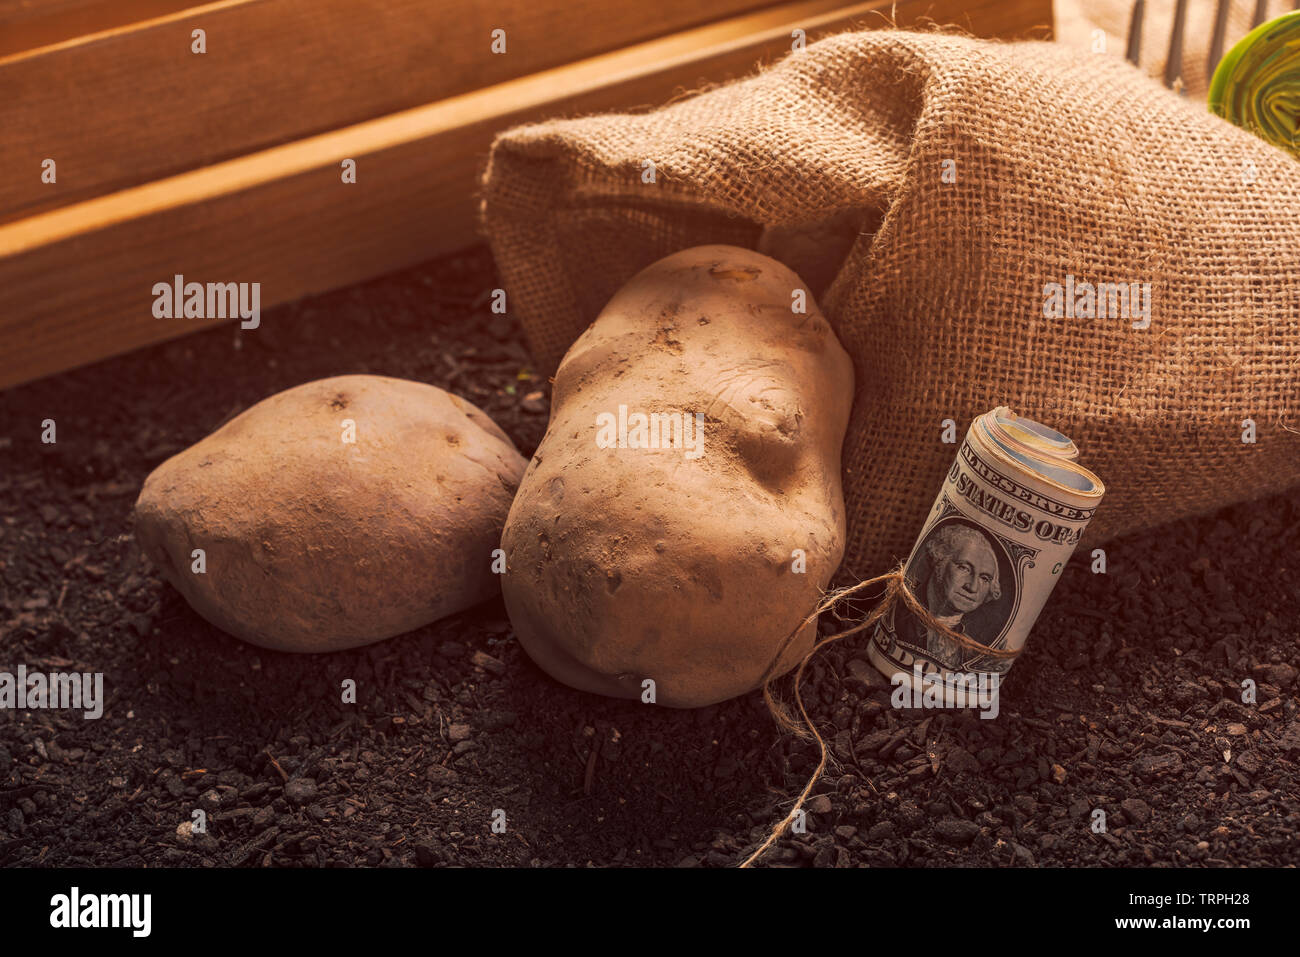 Gewinne aus biologischem Anbau der Kartoffel, Rolle von US-Dollar Banknoten auf gartenboden mit Kartoffel knolle im Hintergrund Stockfoto